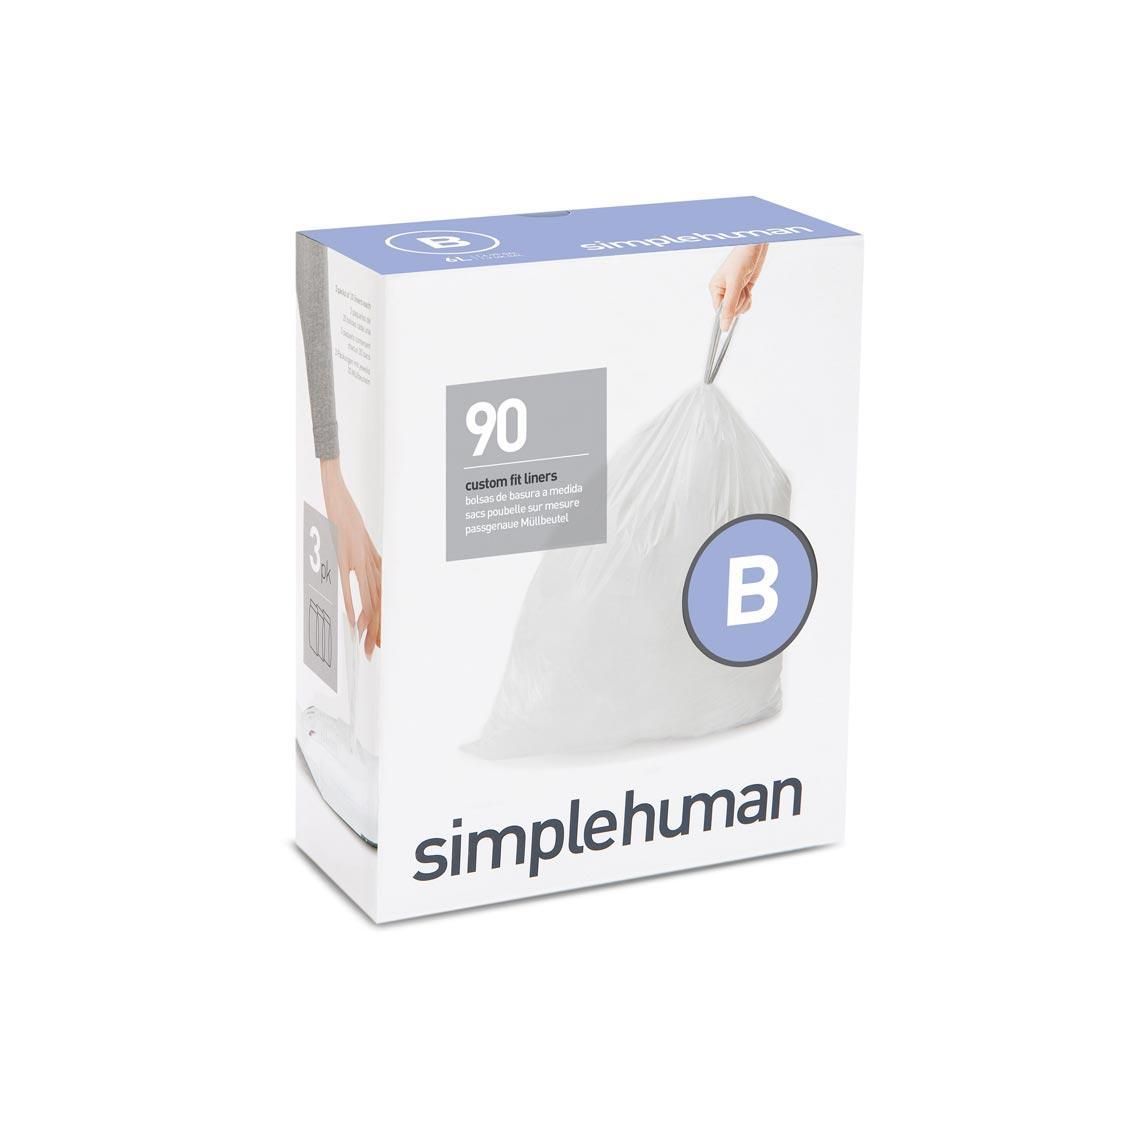 simplehuman CW0251 B-típusú szemetes zsák újratöltő csomag (90 db)